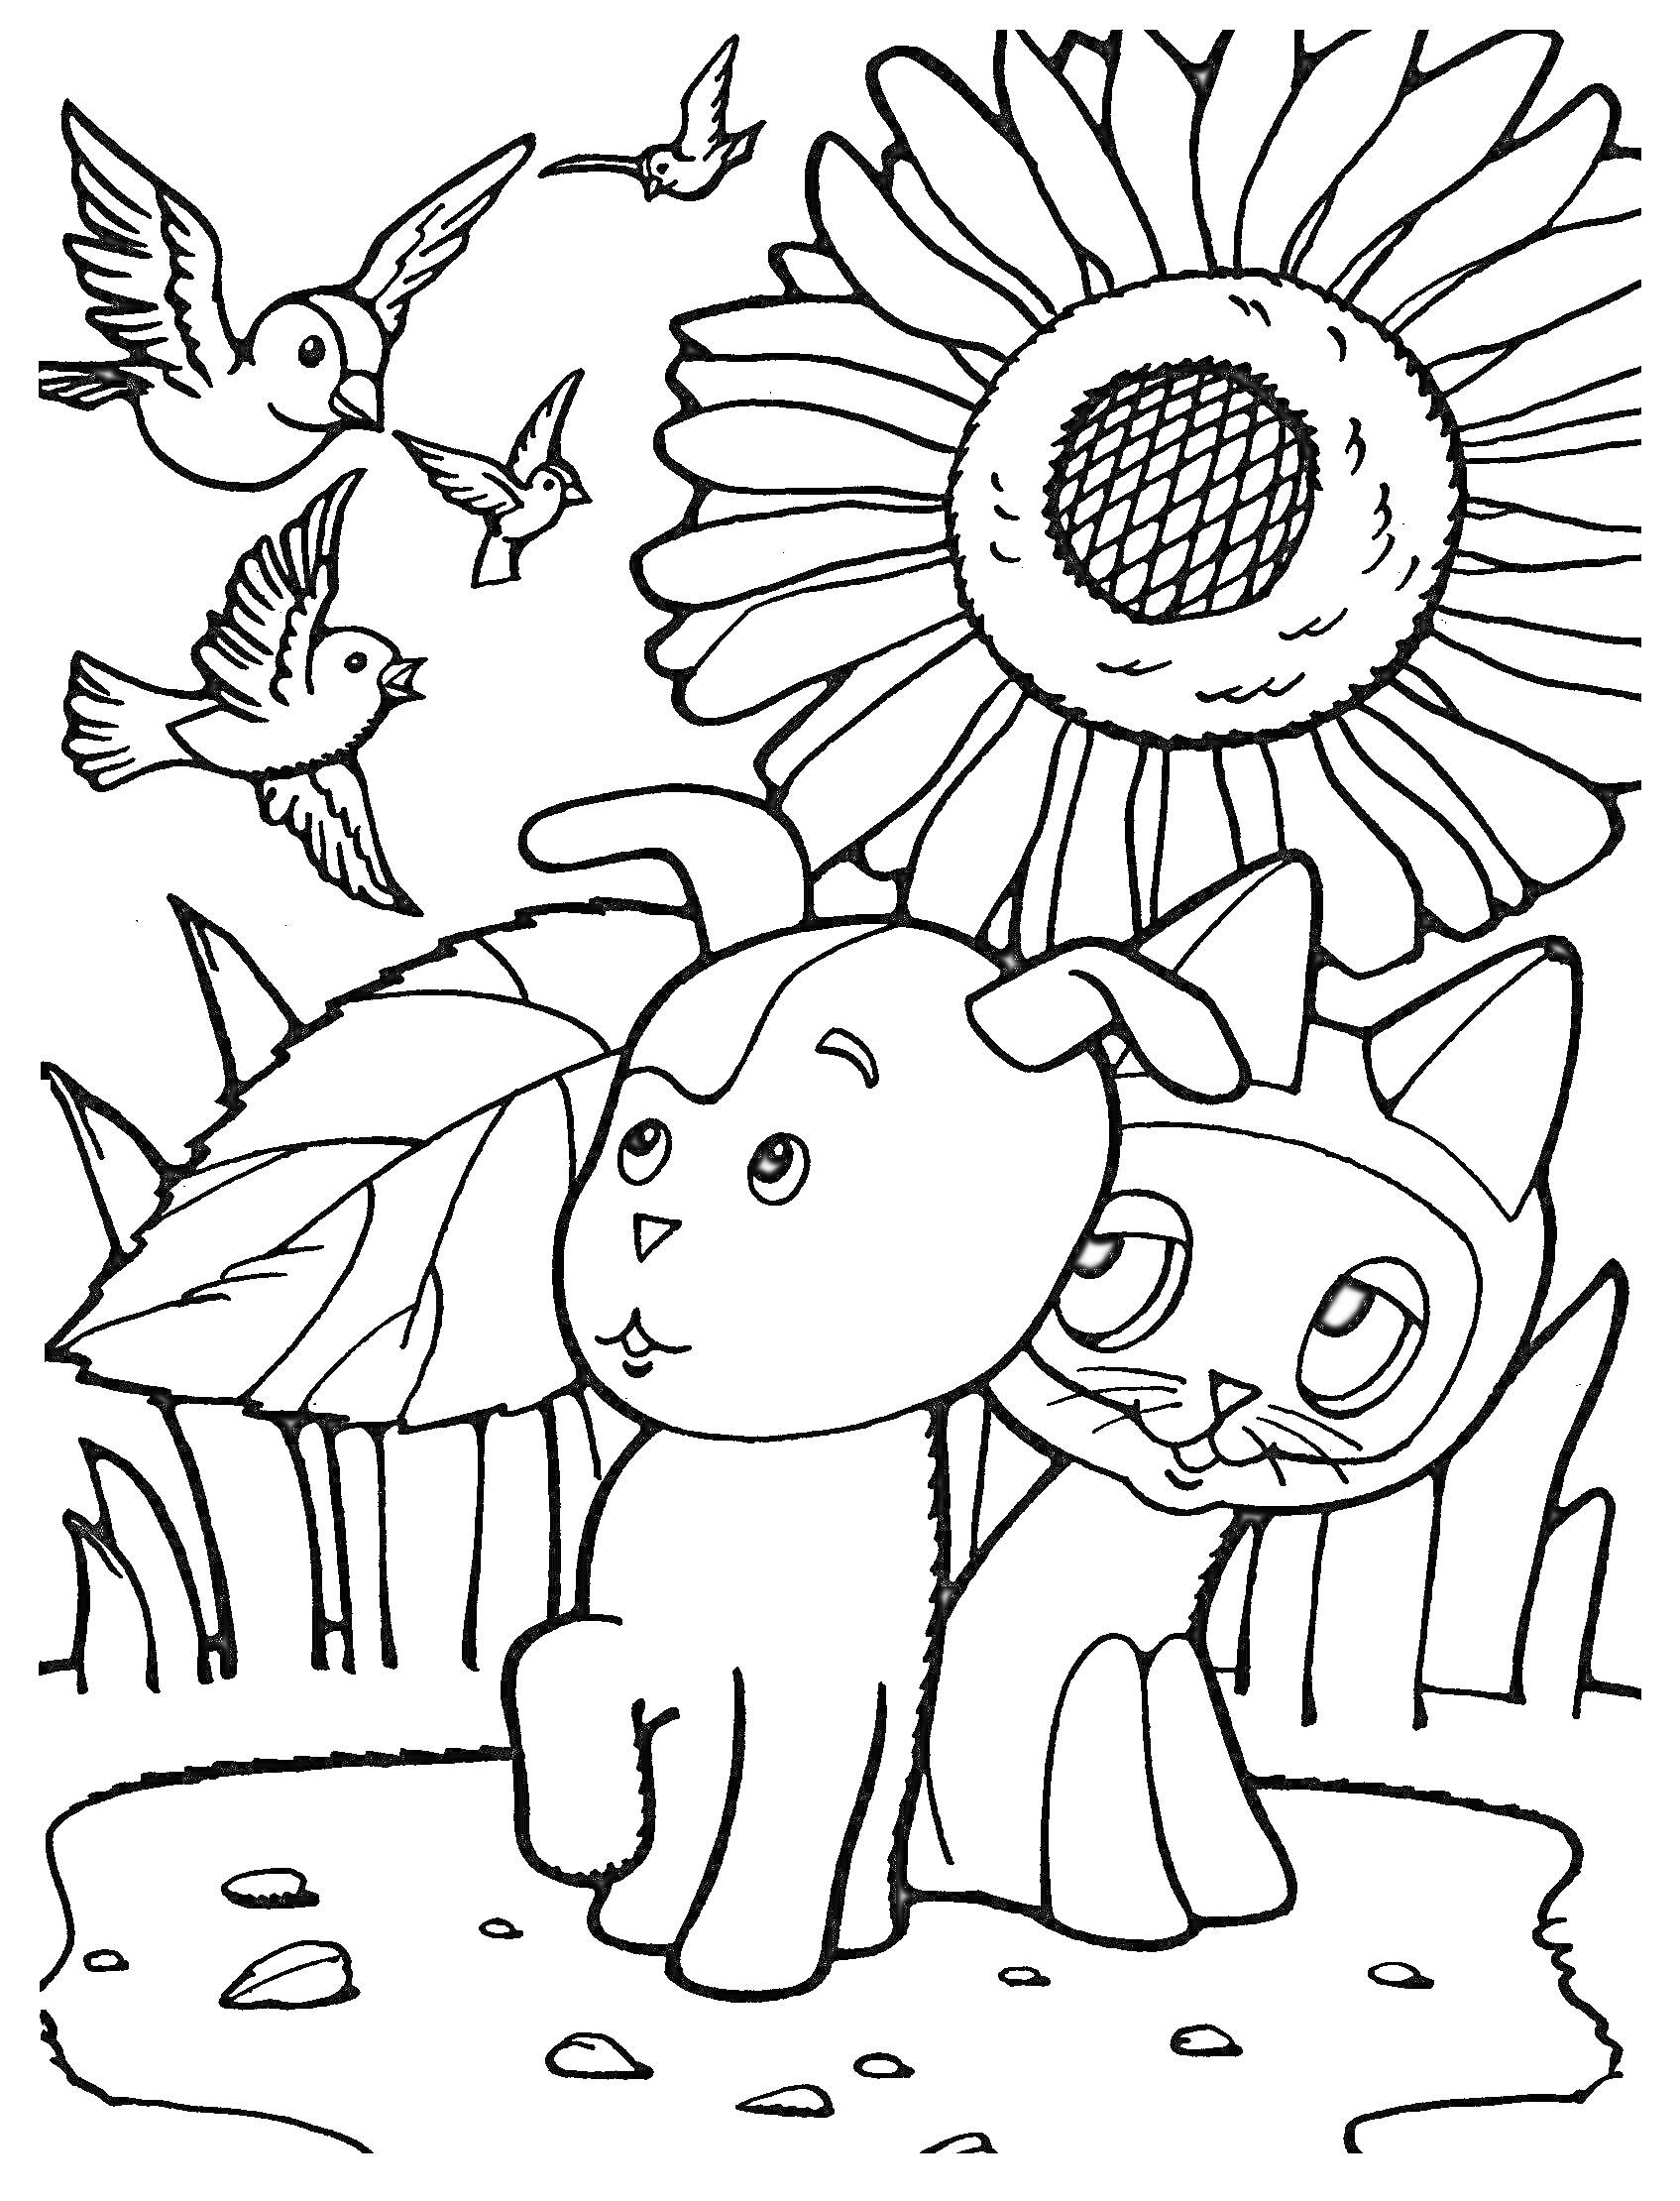 Раскраска Подсолнух с котёнком и щенком, сидящих под ним, с летающими птицами